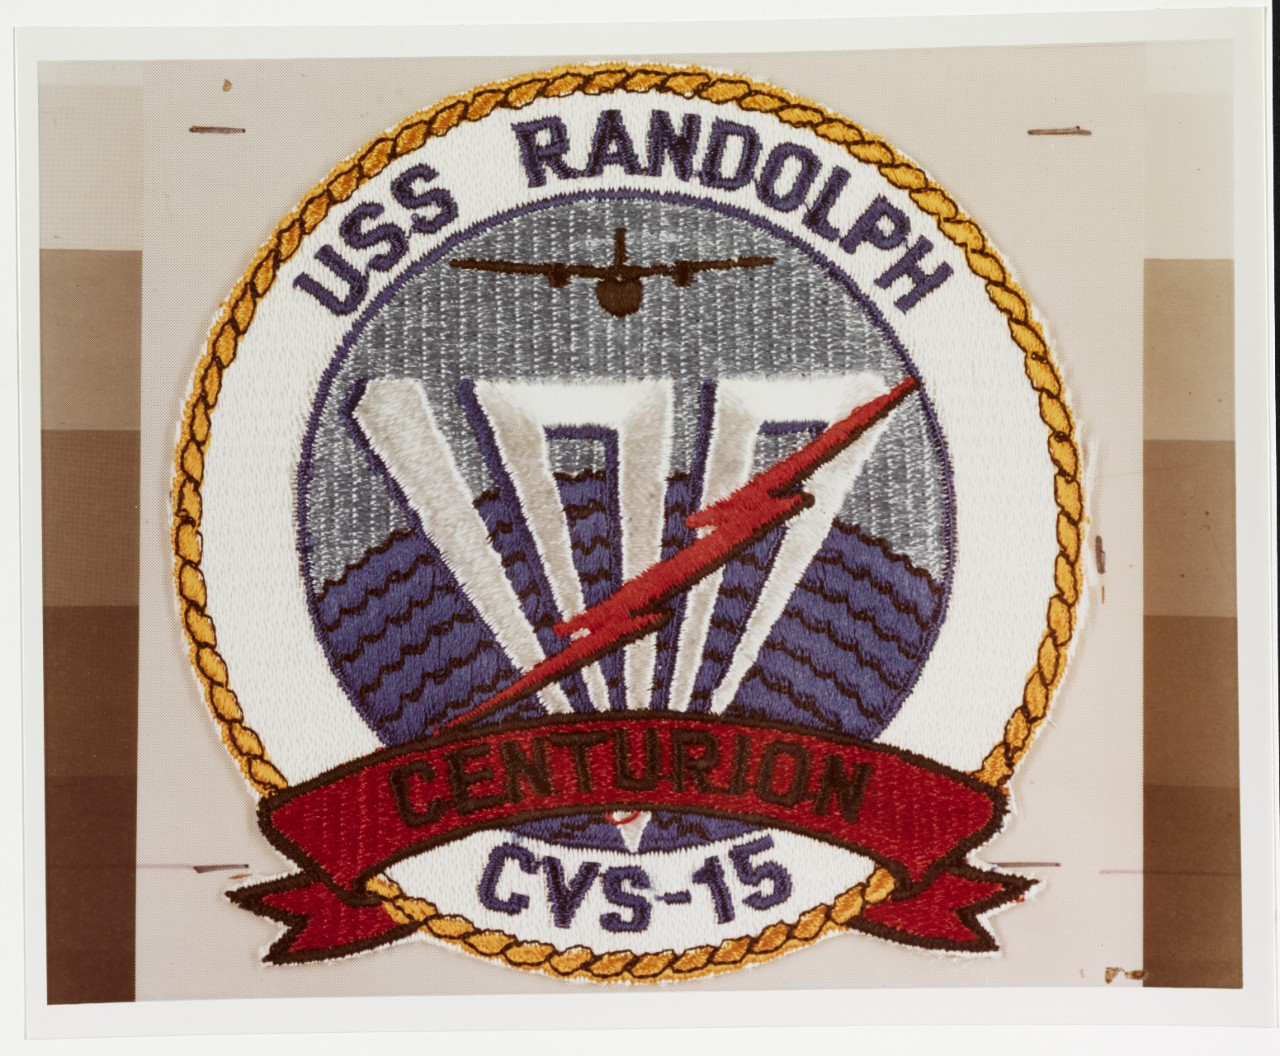 Insignia:  USS RANDOLPH (CVS-15)